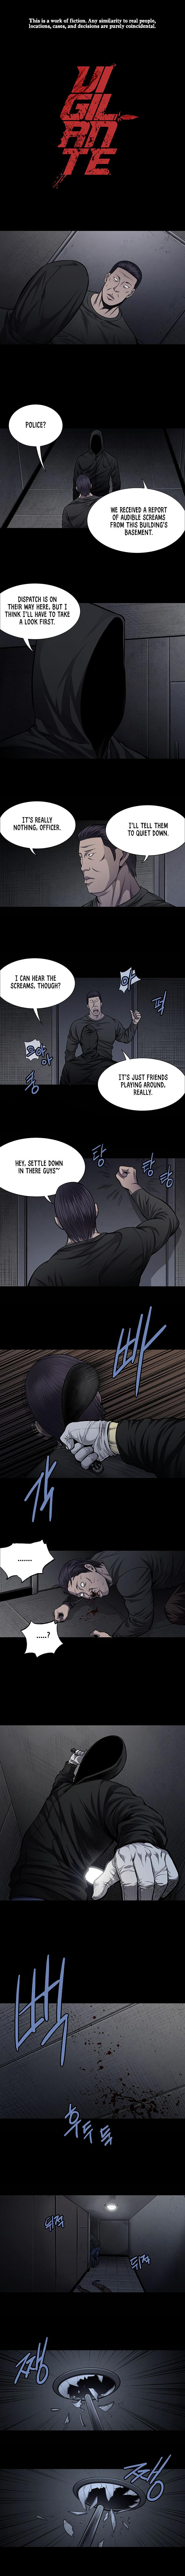 Vigilante - Chapter 29 Page 1